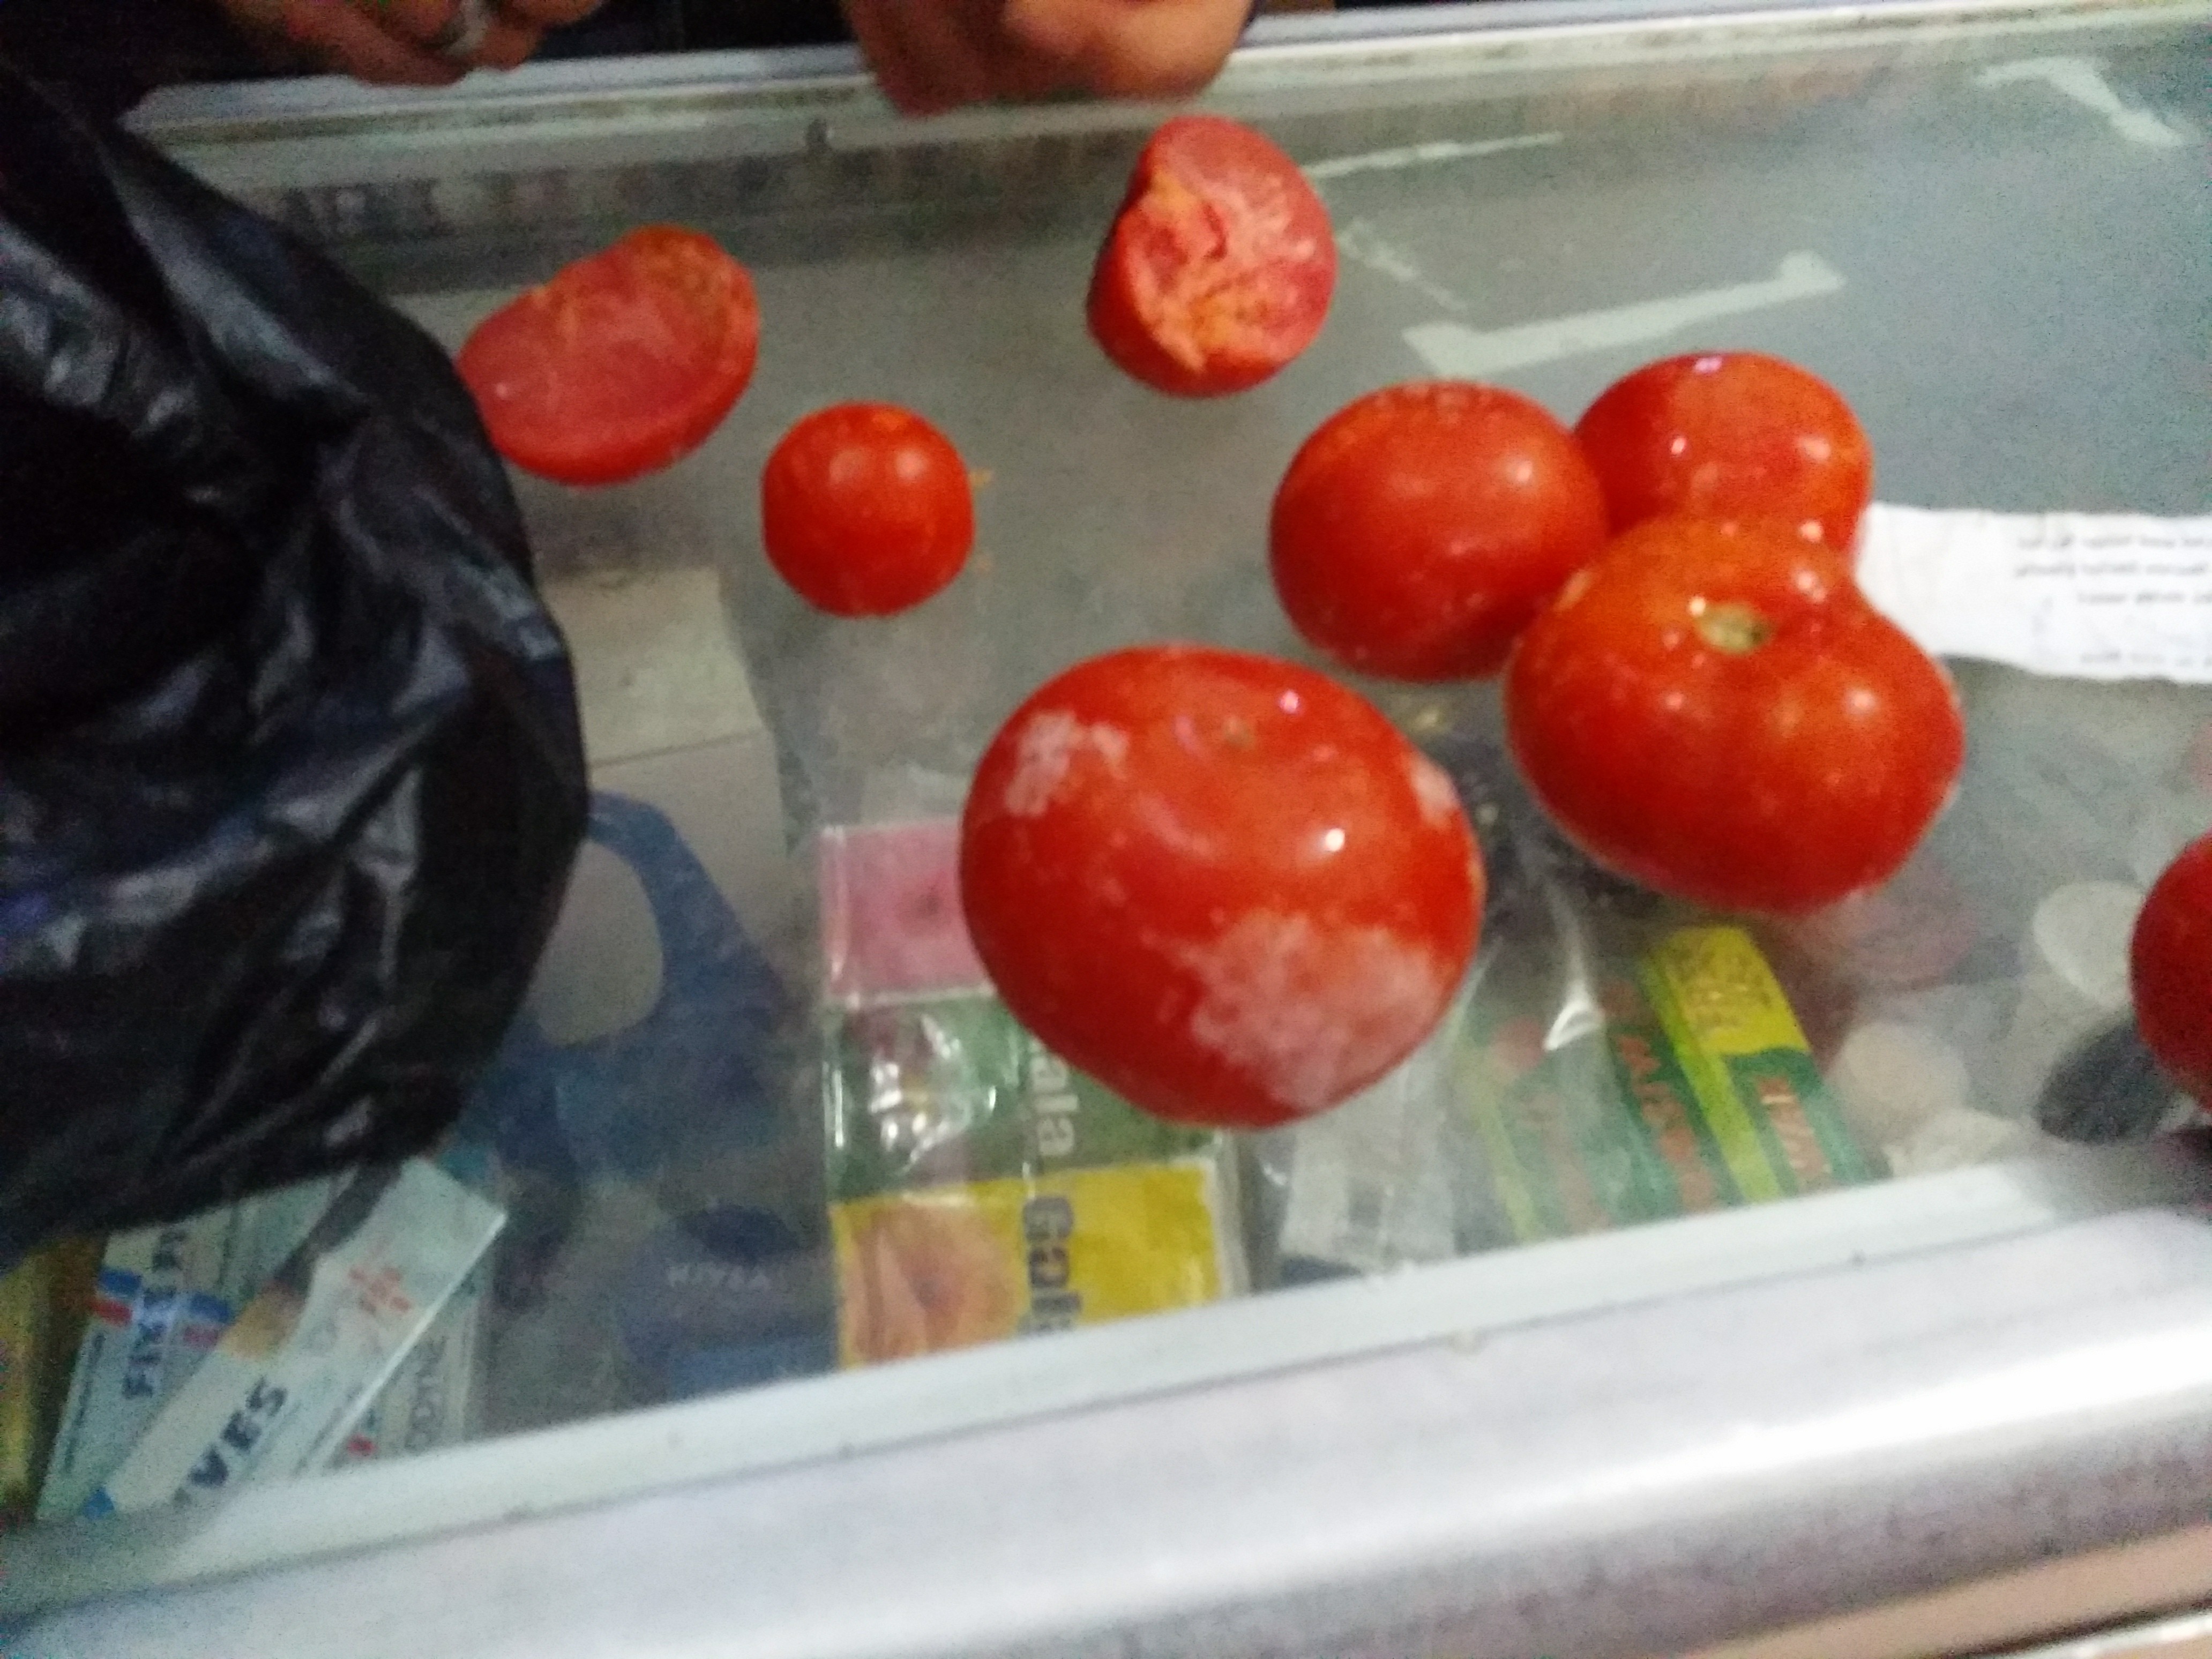 أثار الثلج تظهر على الطماطم